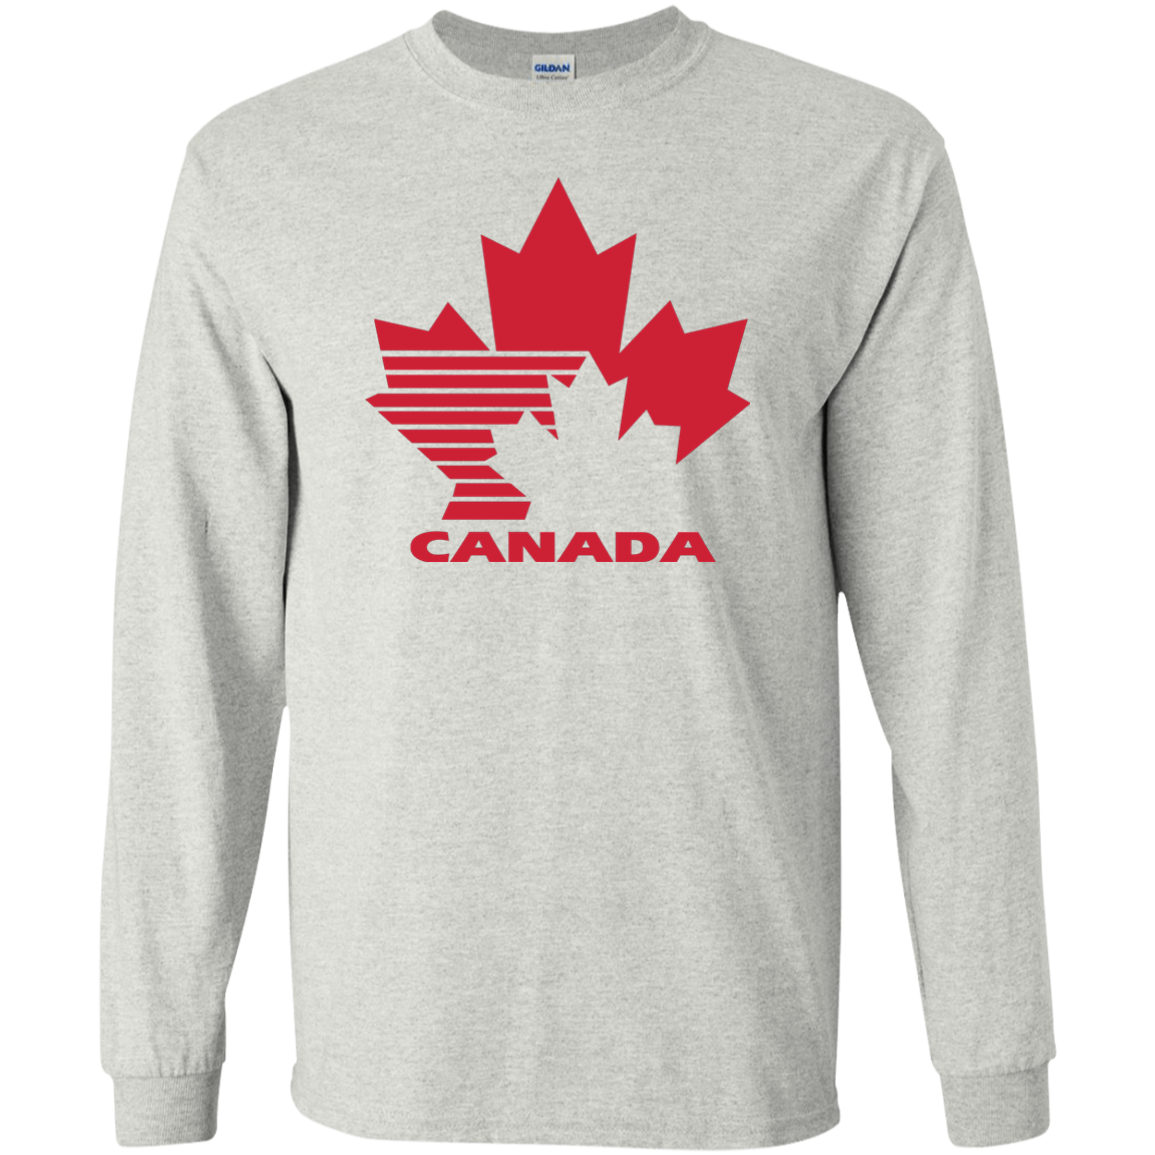 Team Canada, Retro, 80's, Hockey, Logo, Jersey, T-Shirt | eBay